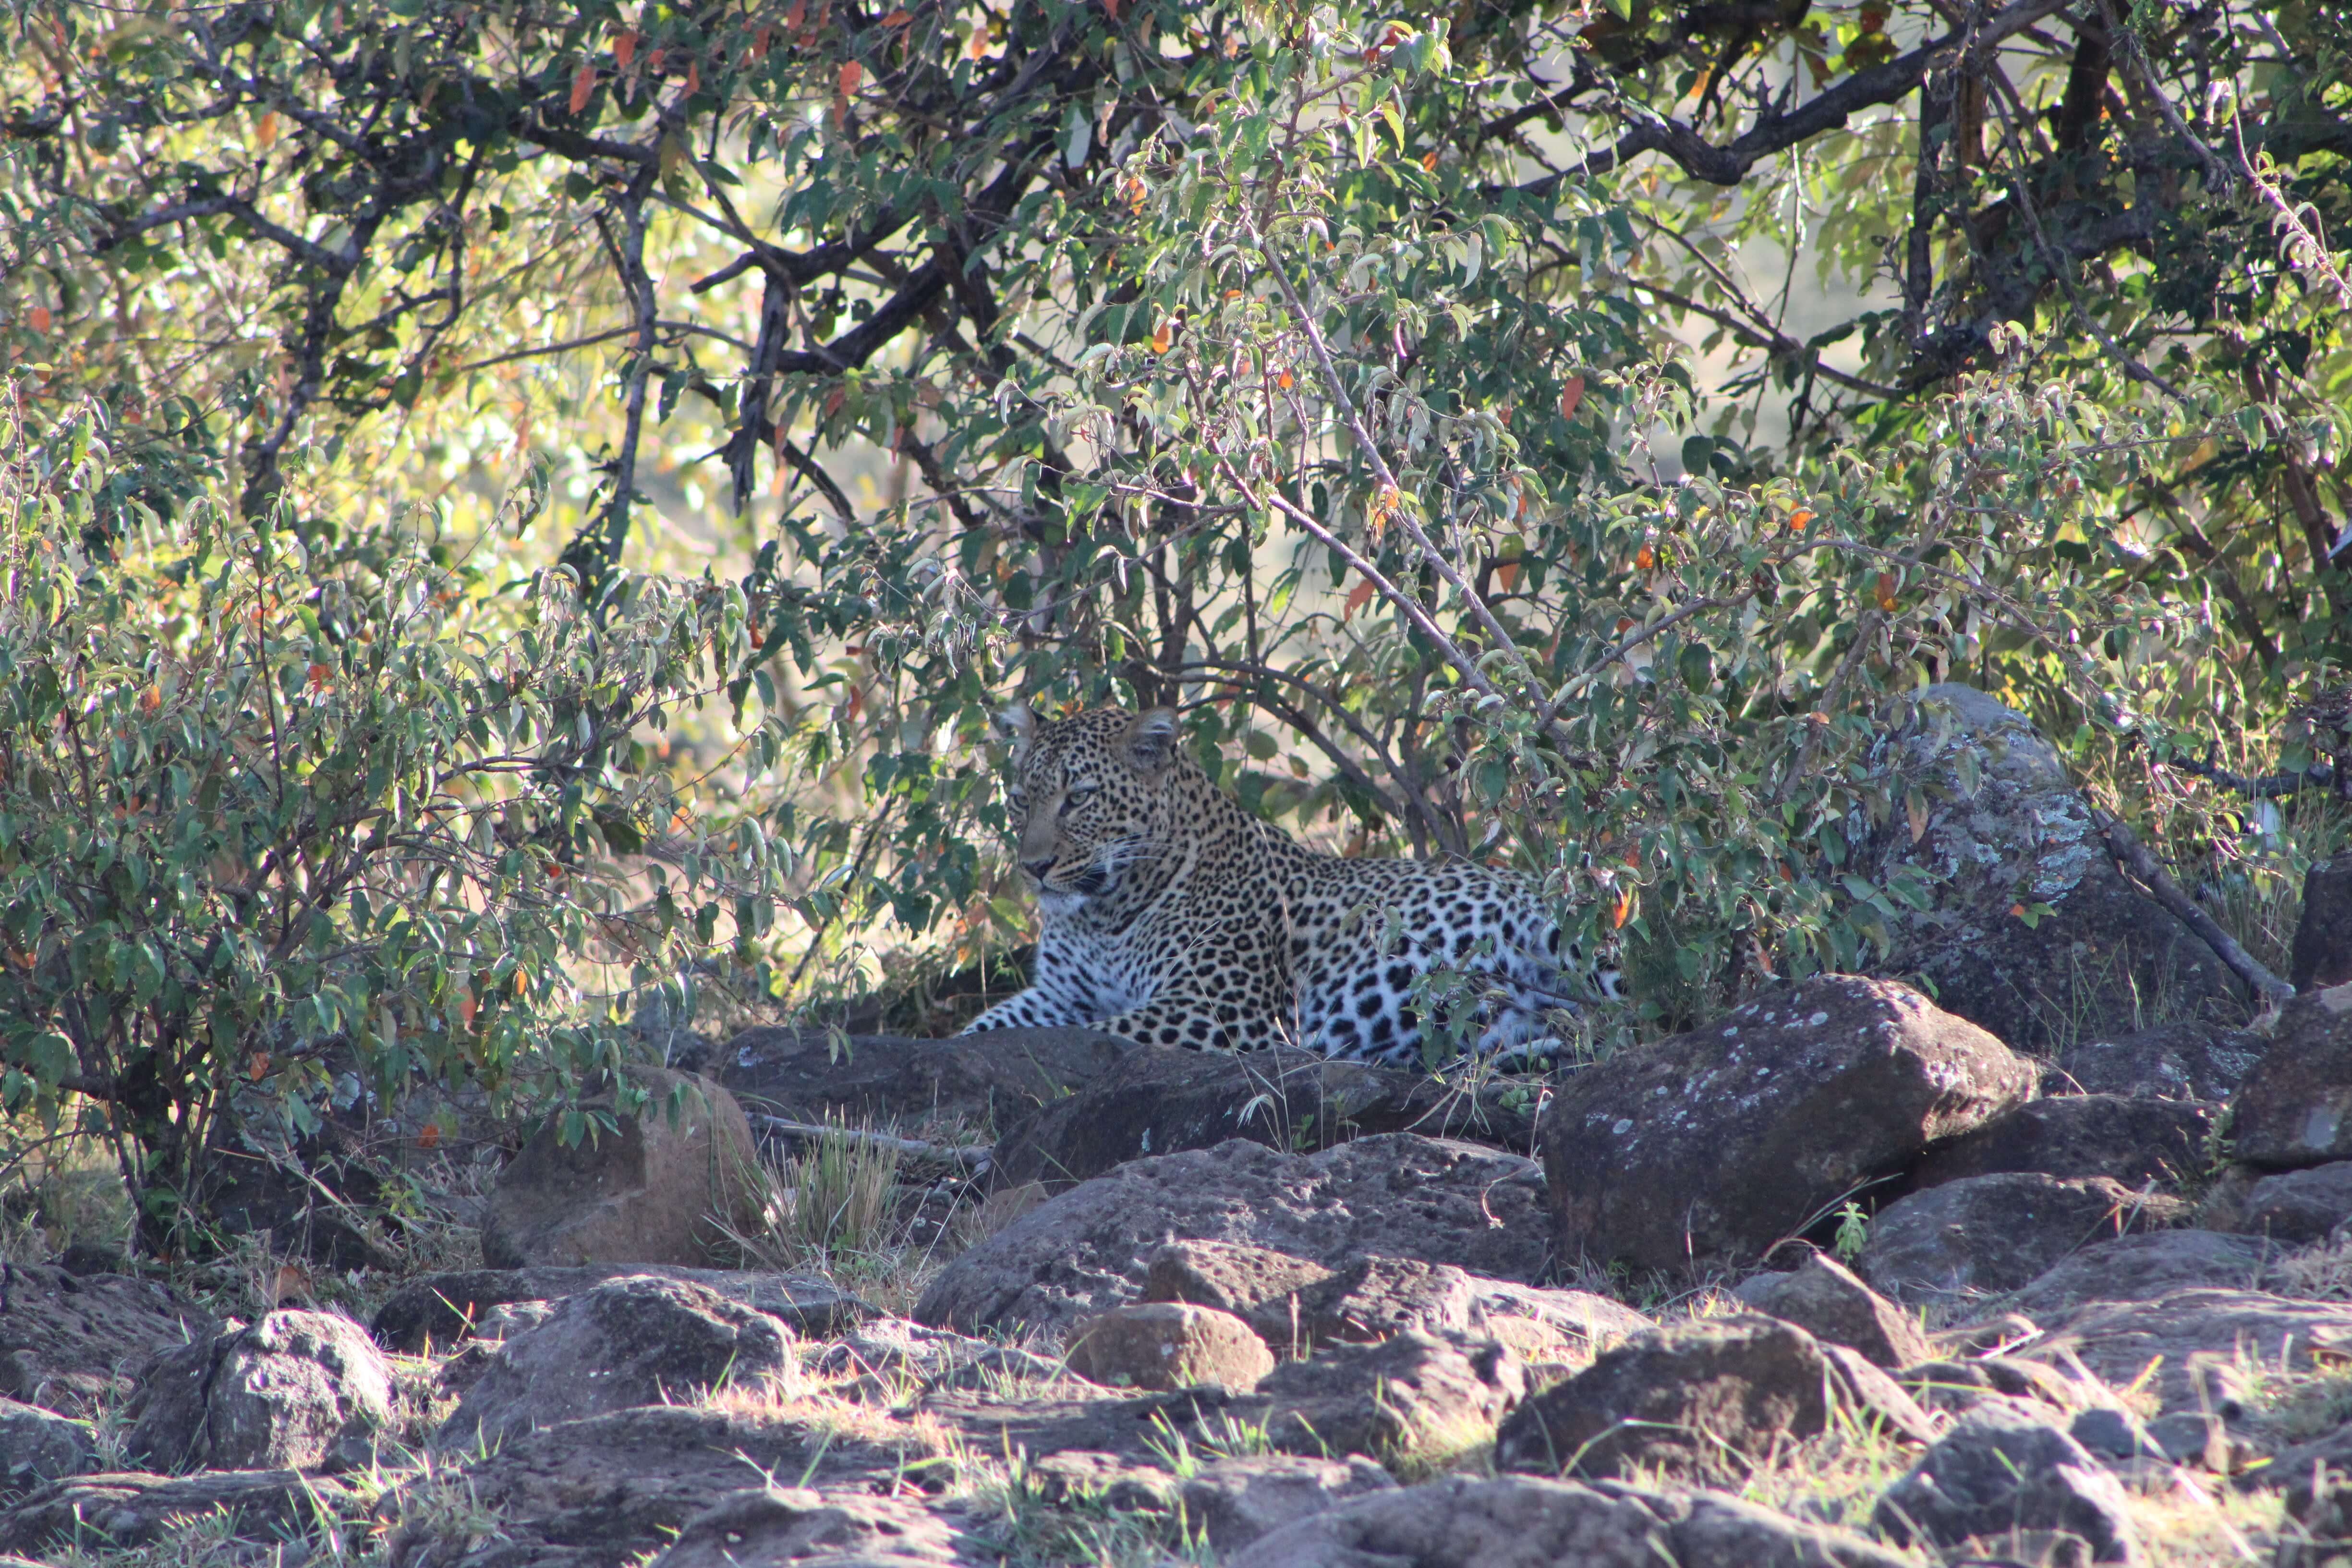 A leopard in the Masai Mara